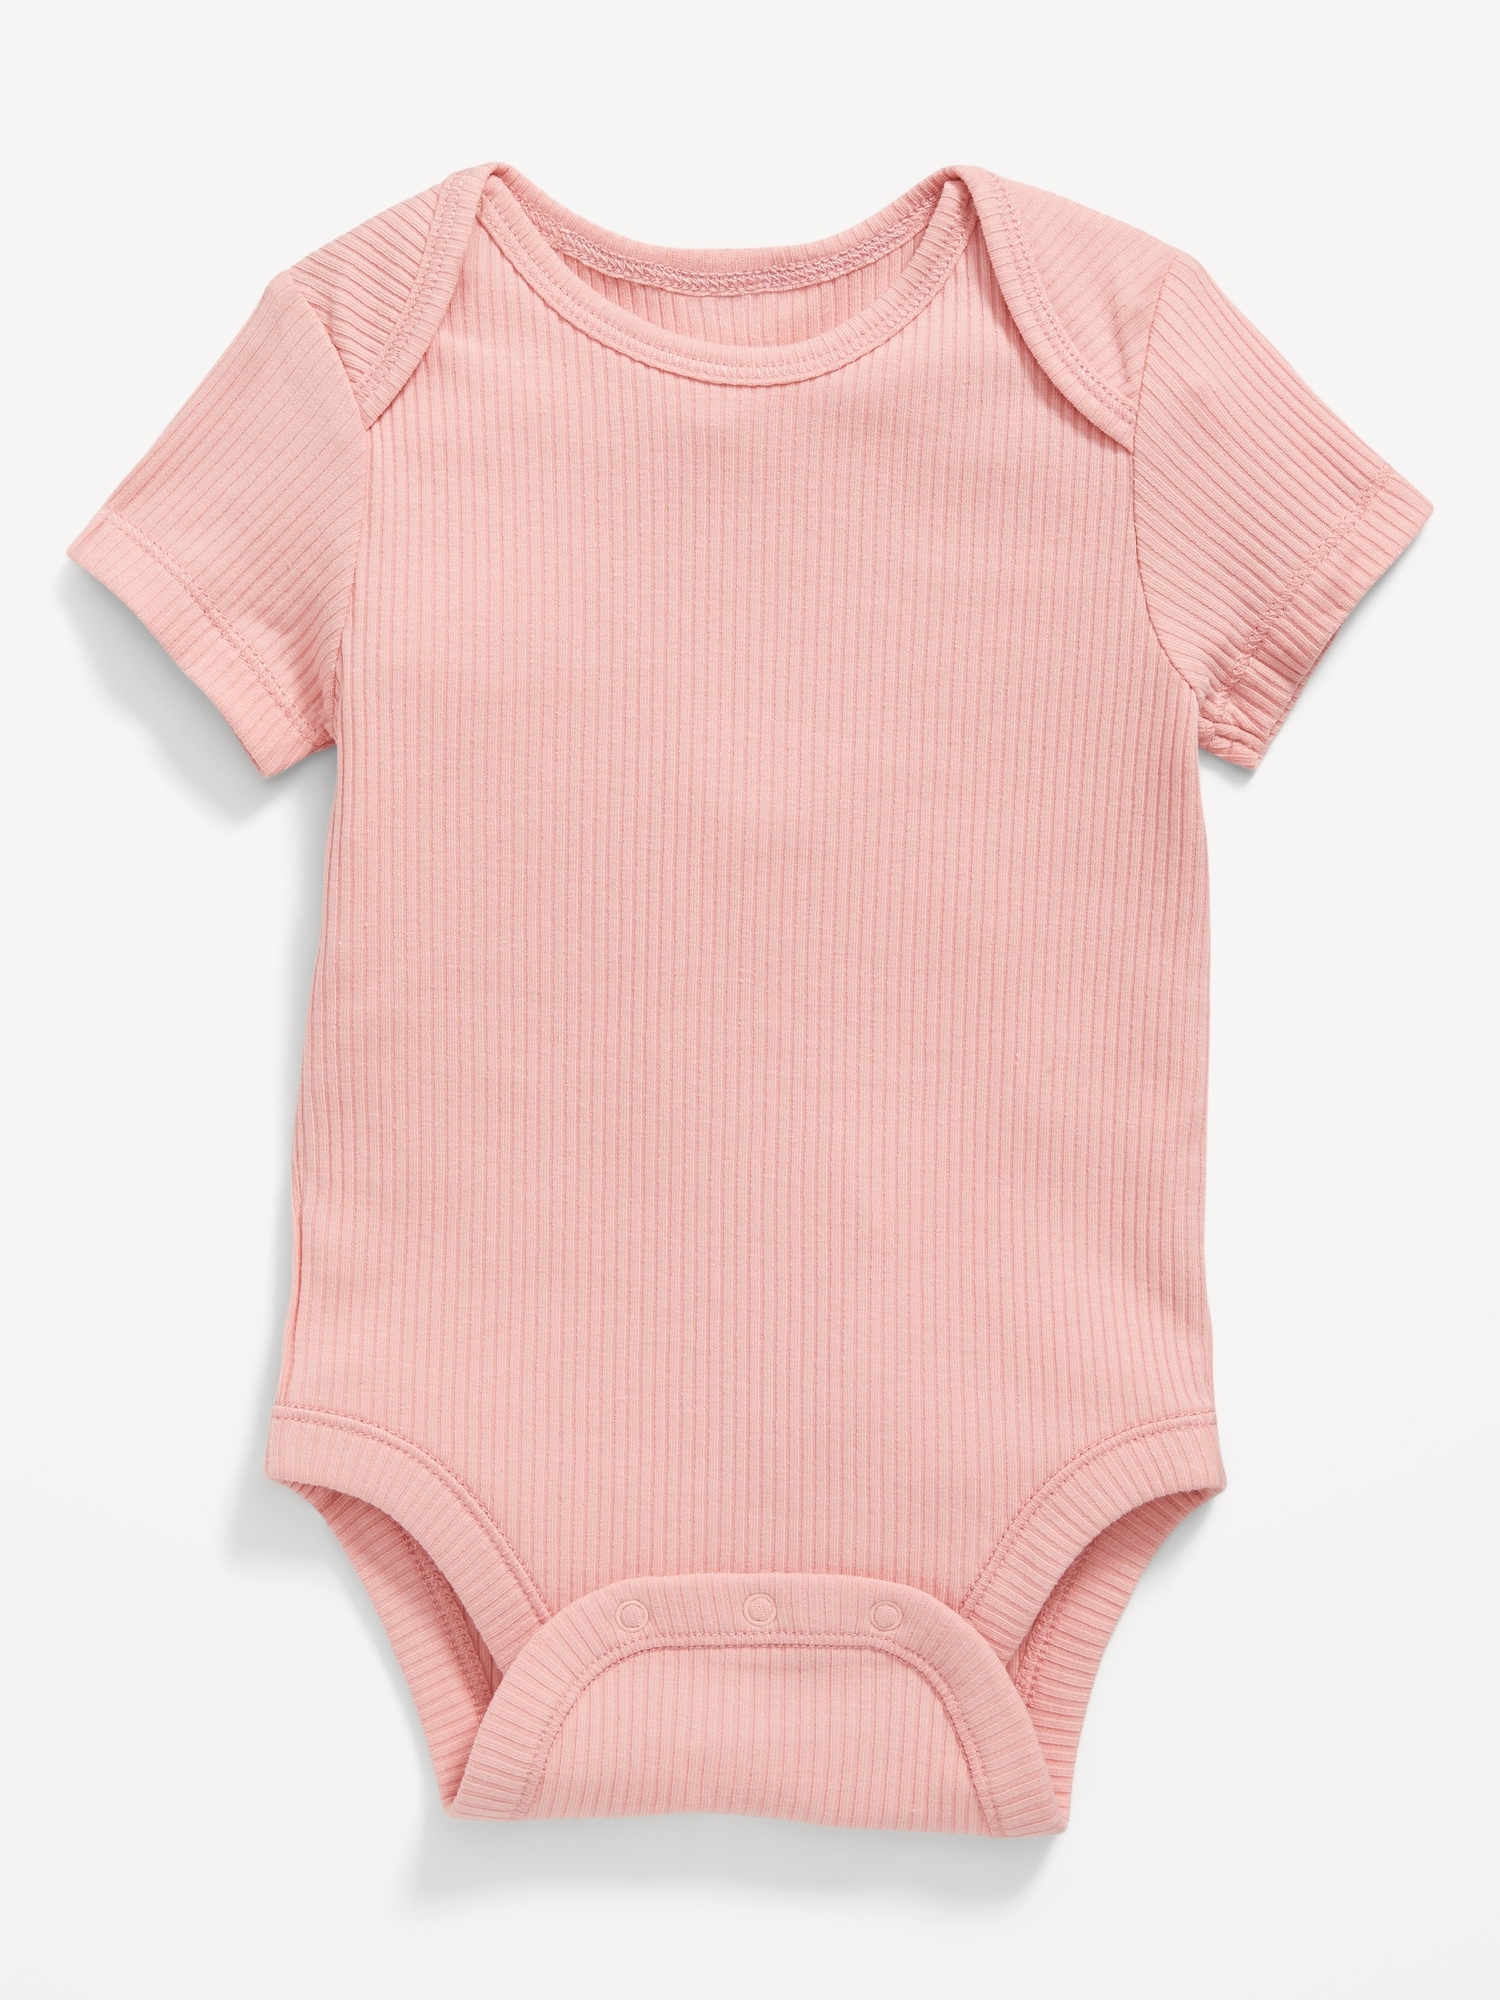 Unisex Short-Sleeve Rib-Knit Bodysuit for Baby